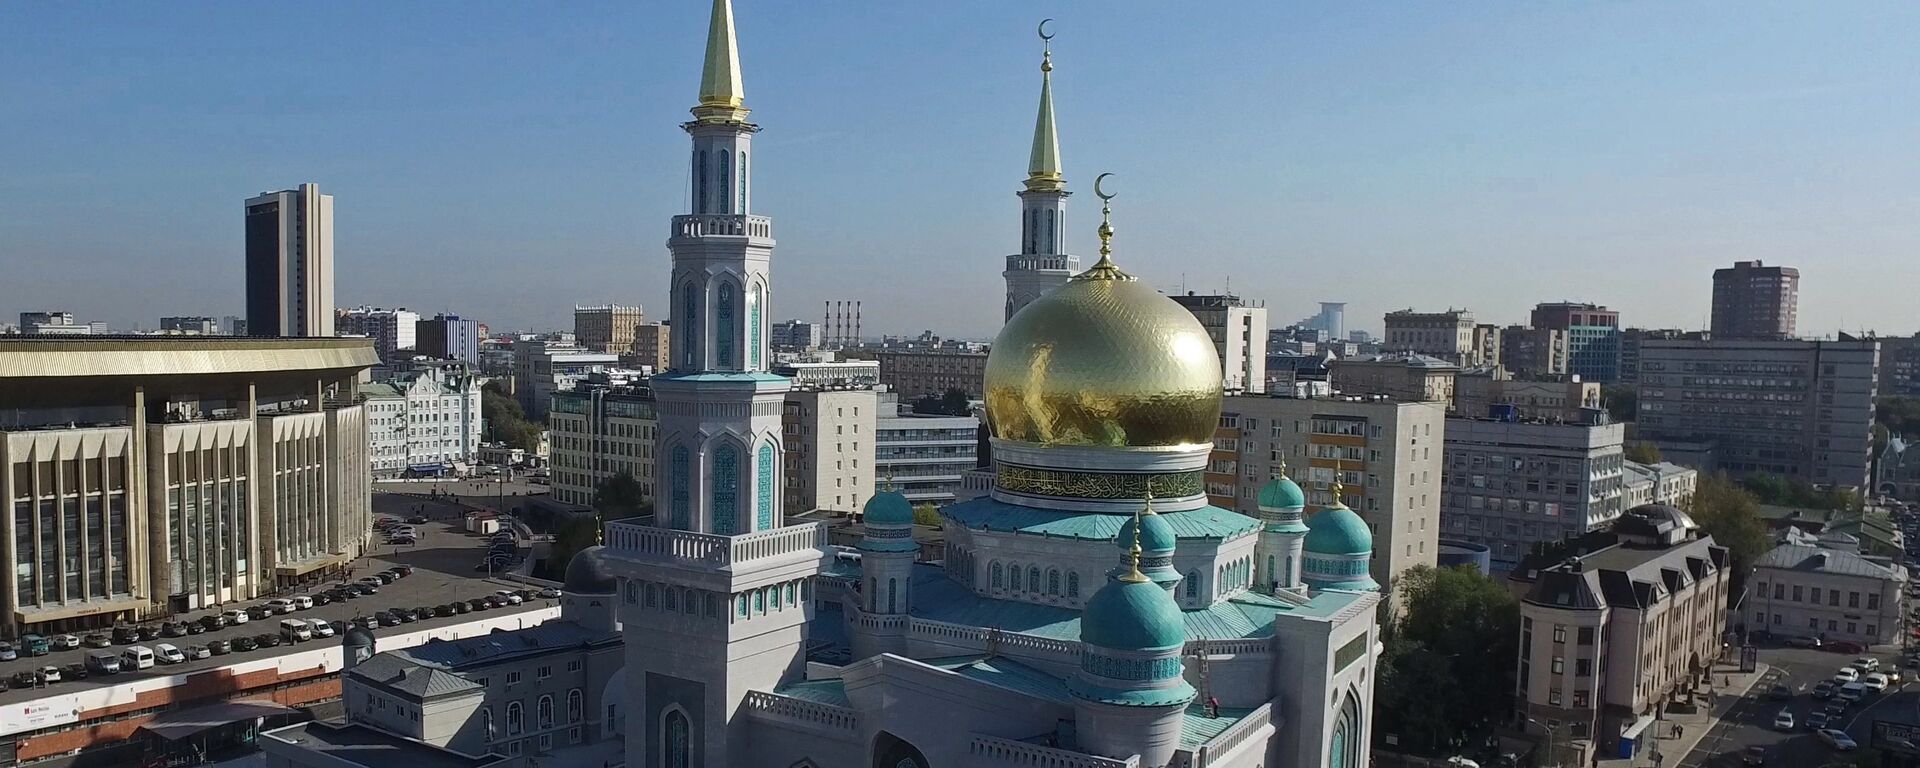 Московская соборная мечеть открылась после реконструкции - Sputnik Узбекистан, 1920, 12.07.2021